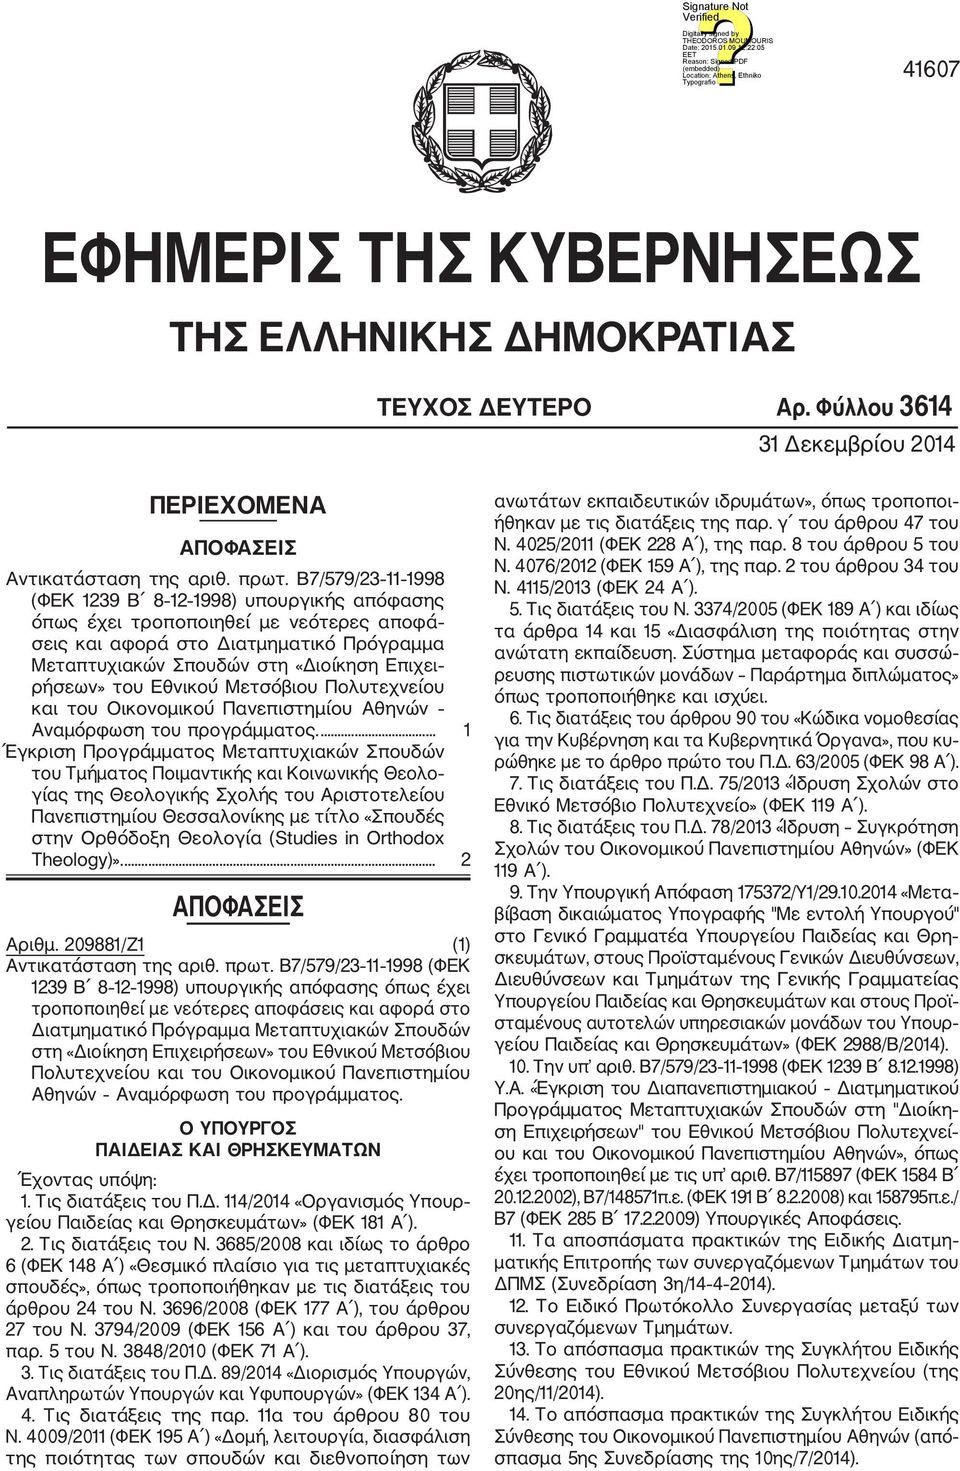 Εθνικού Μετσόβιου Πολυτεχνείου και του Οικονομικού Πανεπιστημίου Αθηνών Αναμόρφωση του προγράμματος.